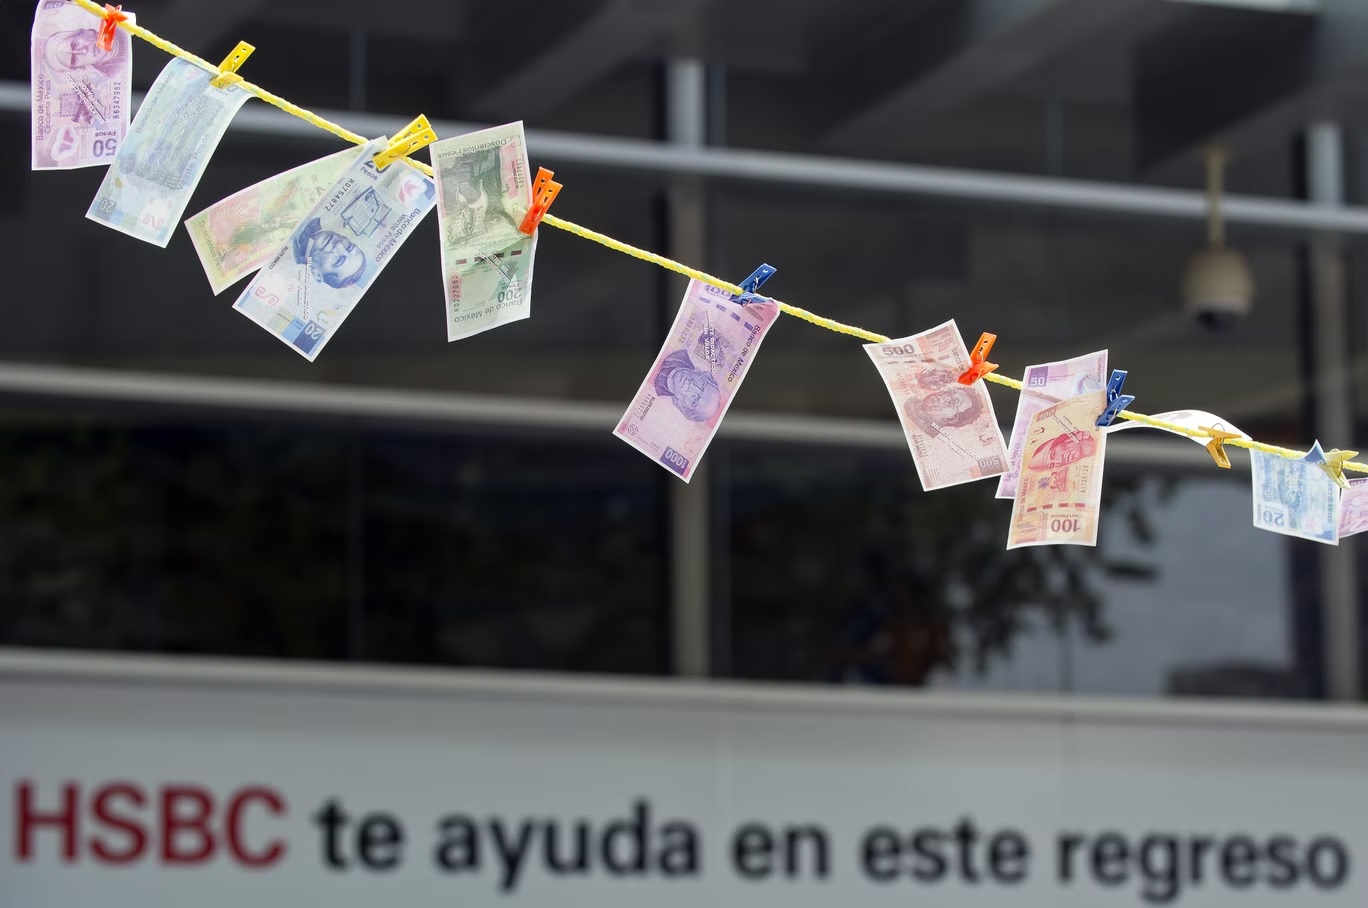 أوراق نقدية مزيفة منشورة تحت الشمس "لتجف" أثناء احتجاج أمام مبنى فرع "HSBC"  في مكسيكو سيتي (أ ف ب/غيتي)